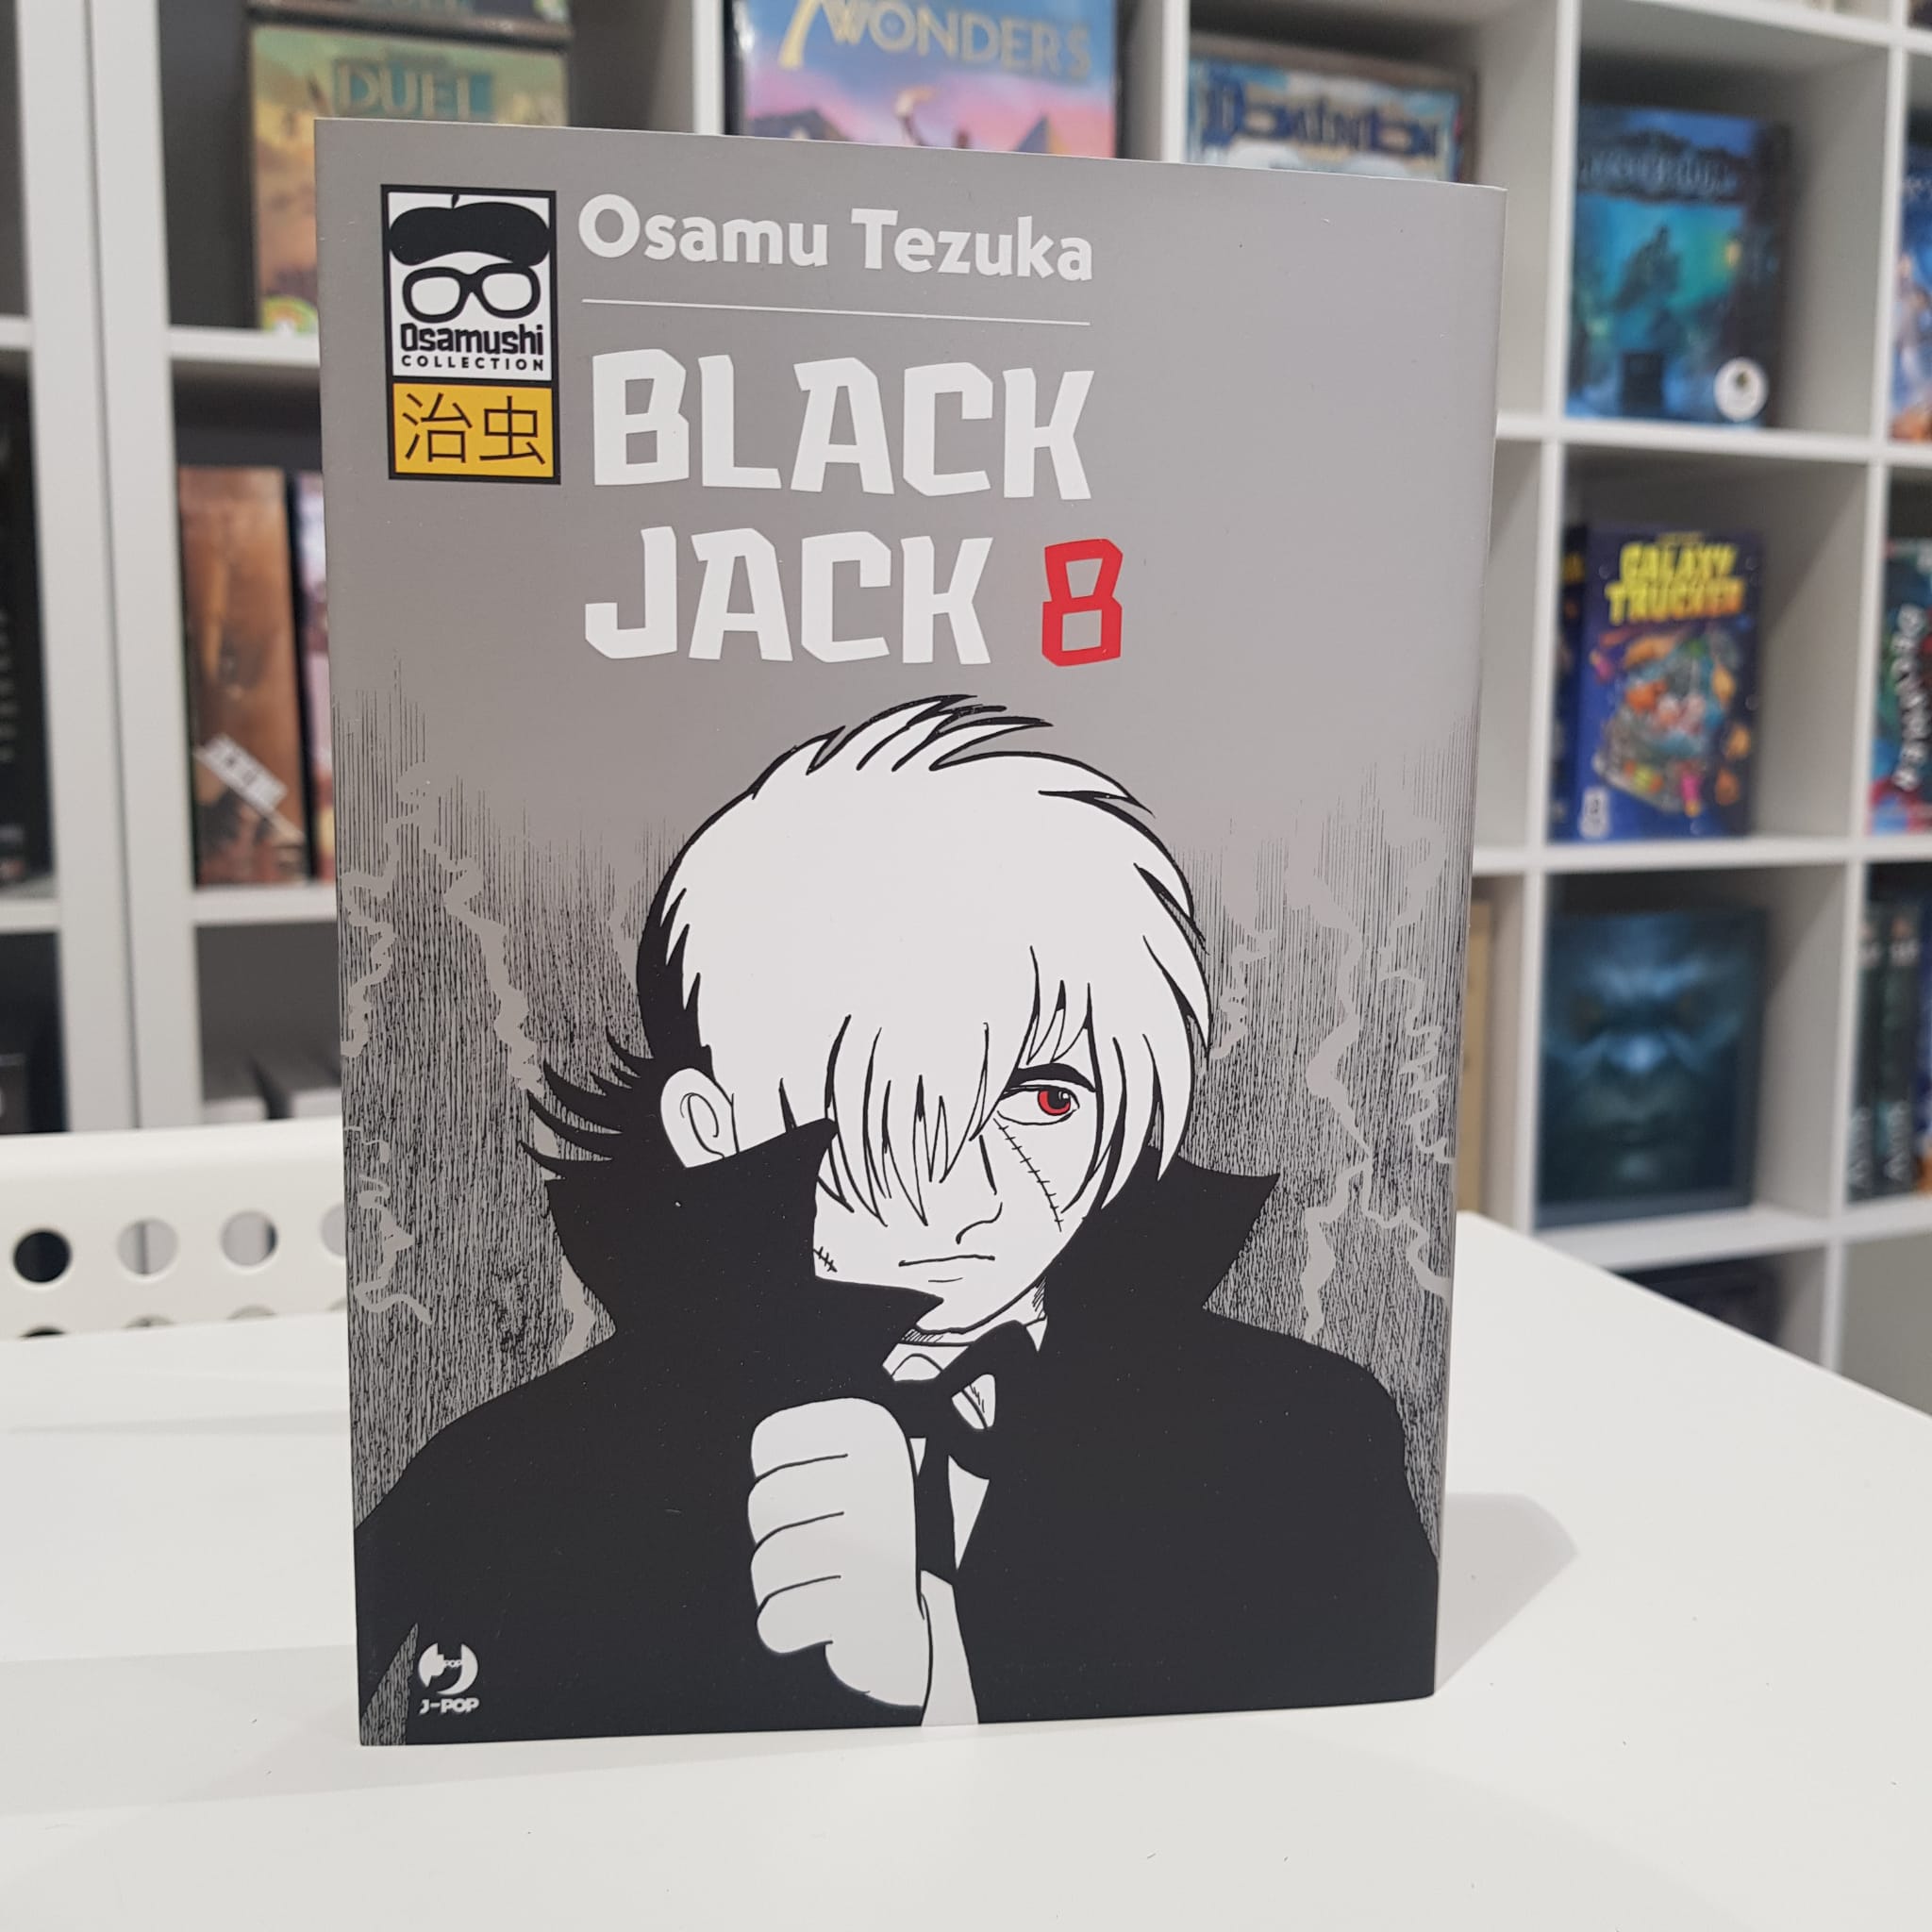 Black Jack 8